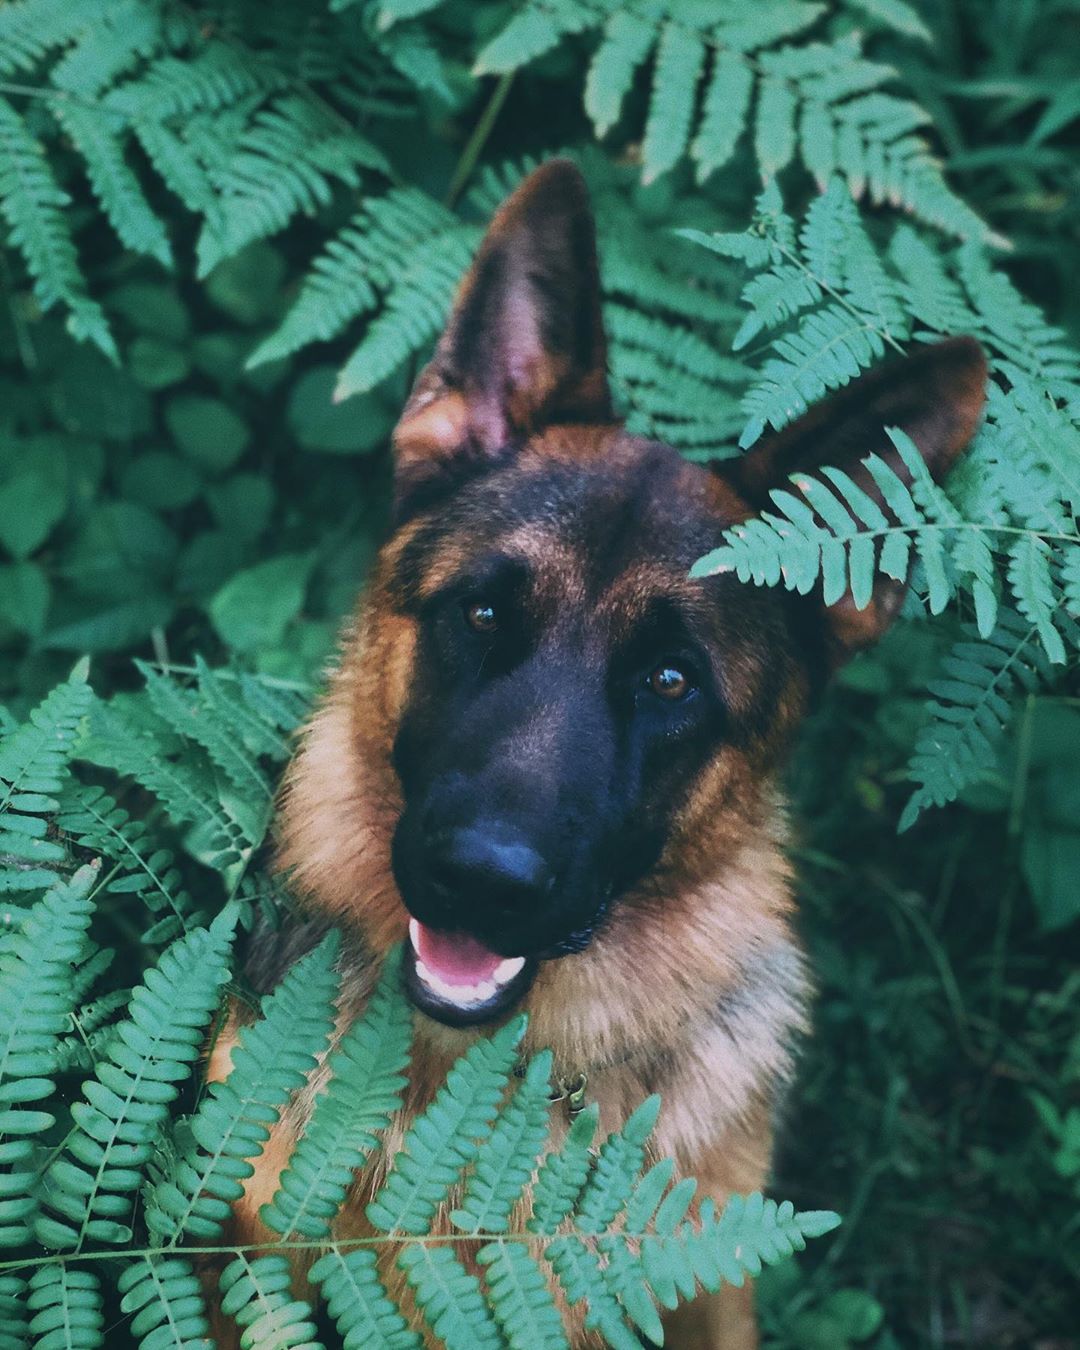 German Shepherd dog photoshoot in the garden in between the green leaves